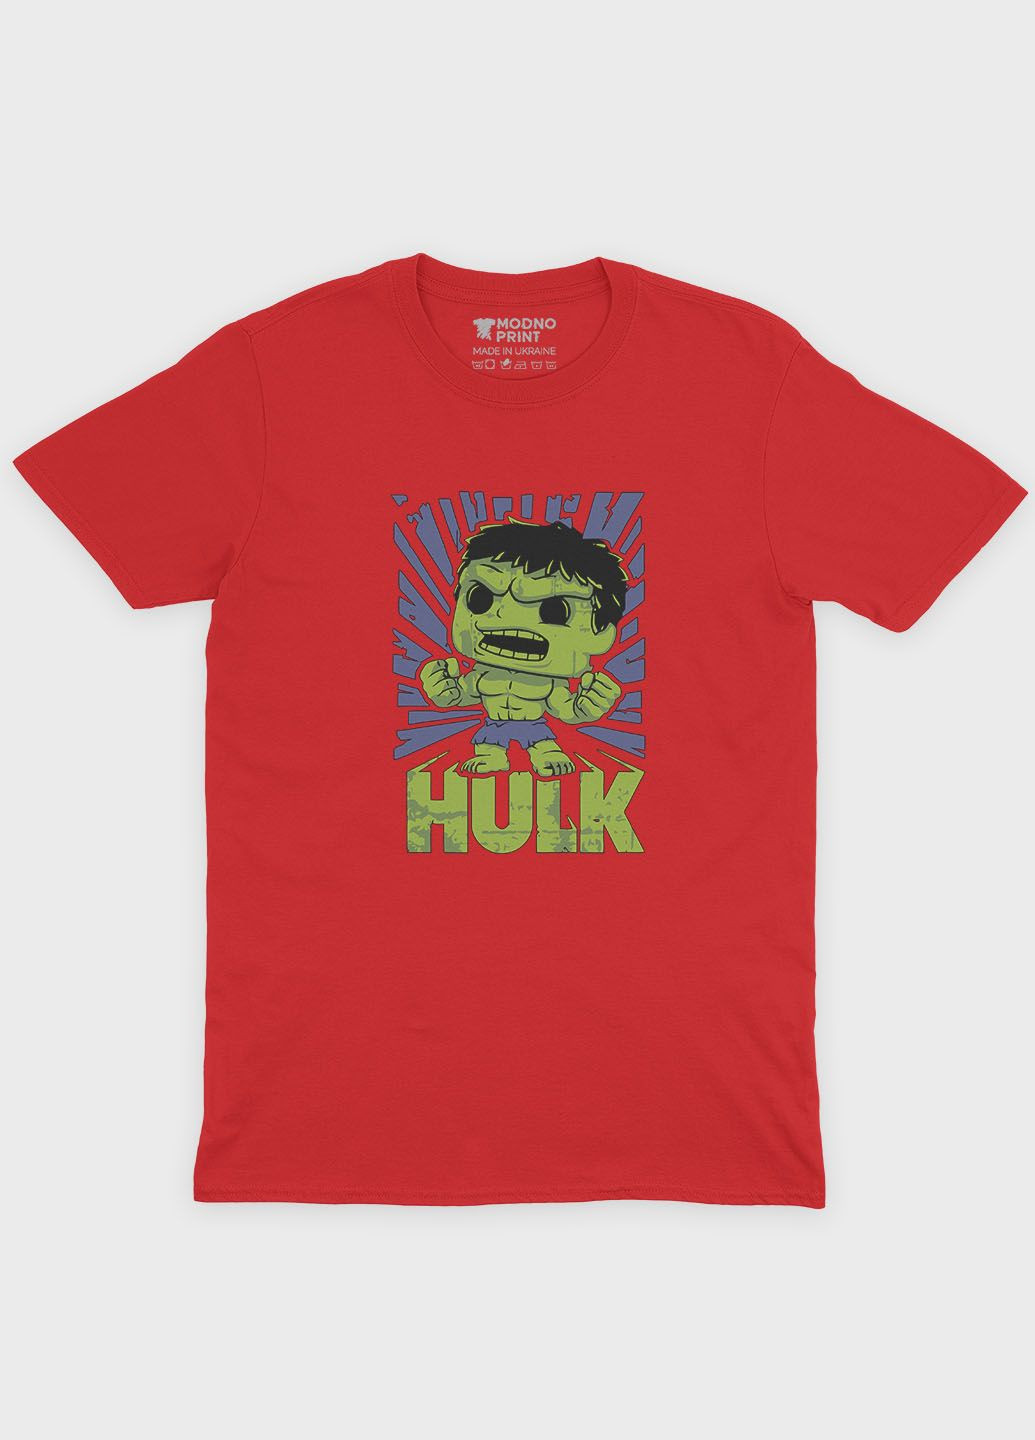 Красная демисезонная футболка для мальчика с принтом супергероя - халк (ts001-1-sre-006-018-014-b) Modno